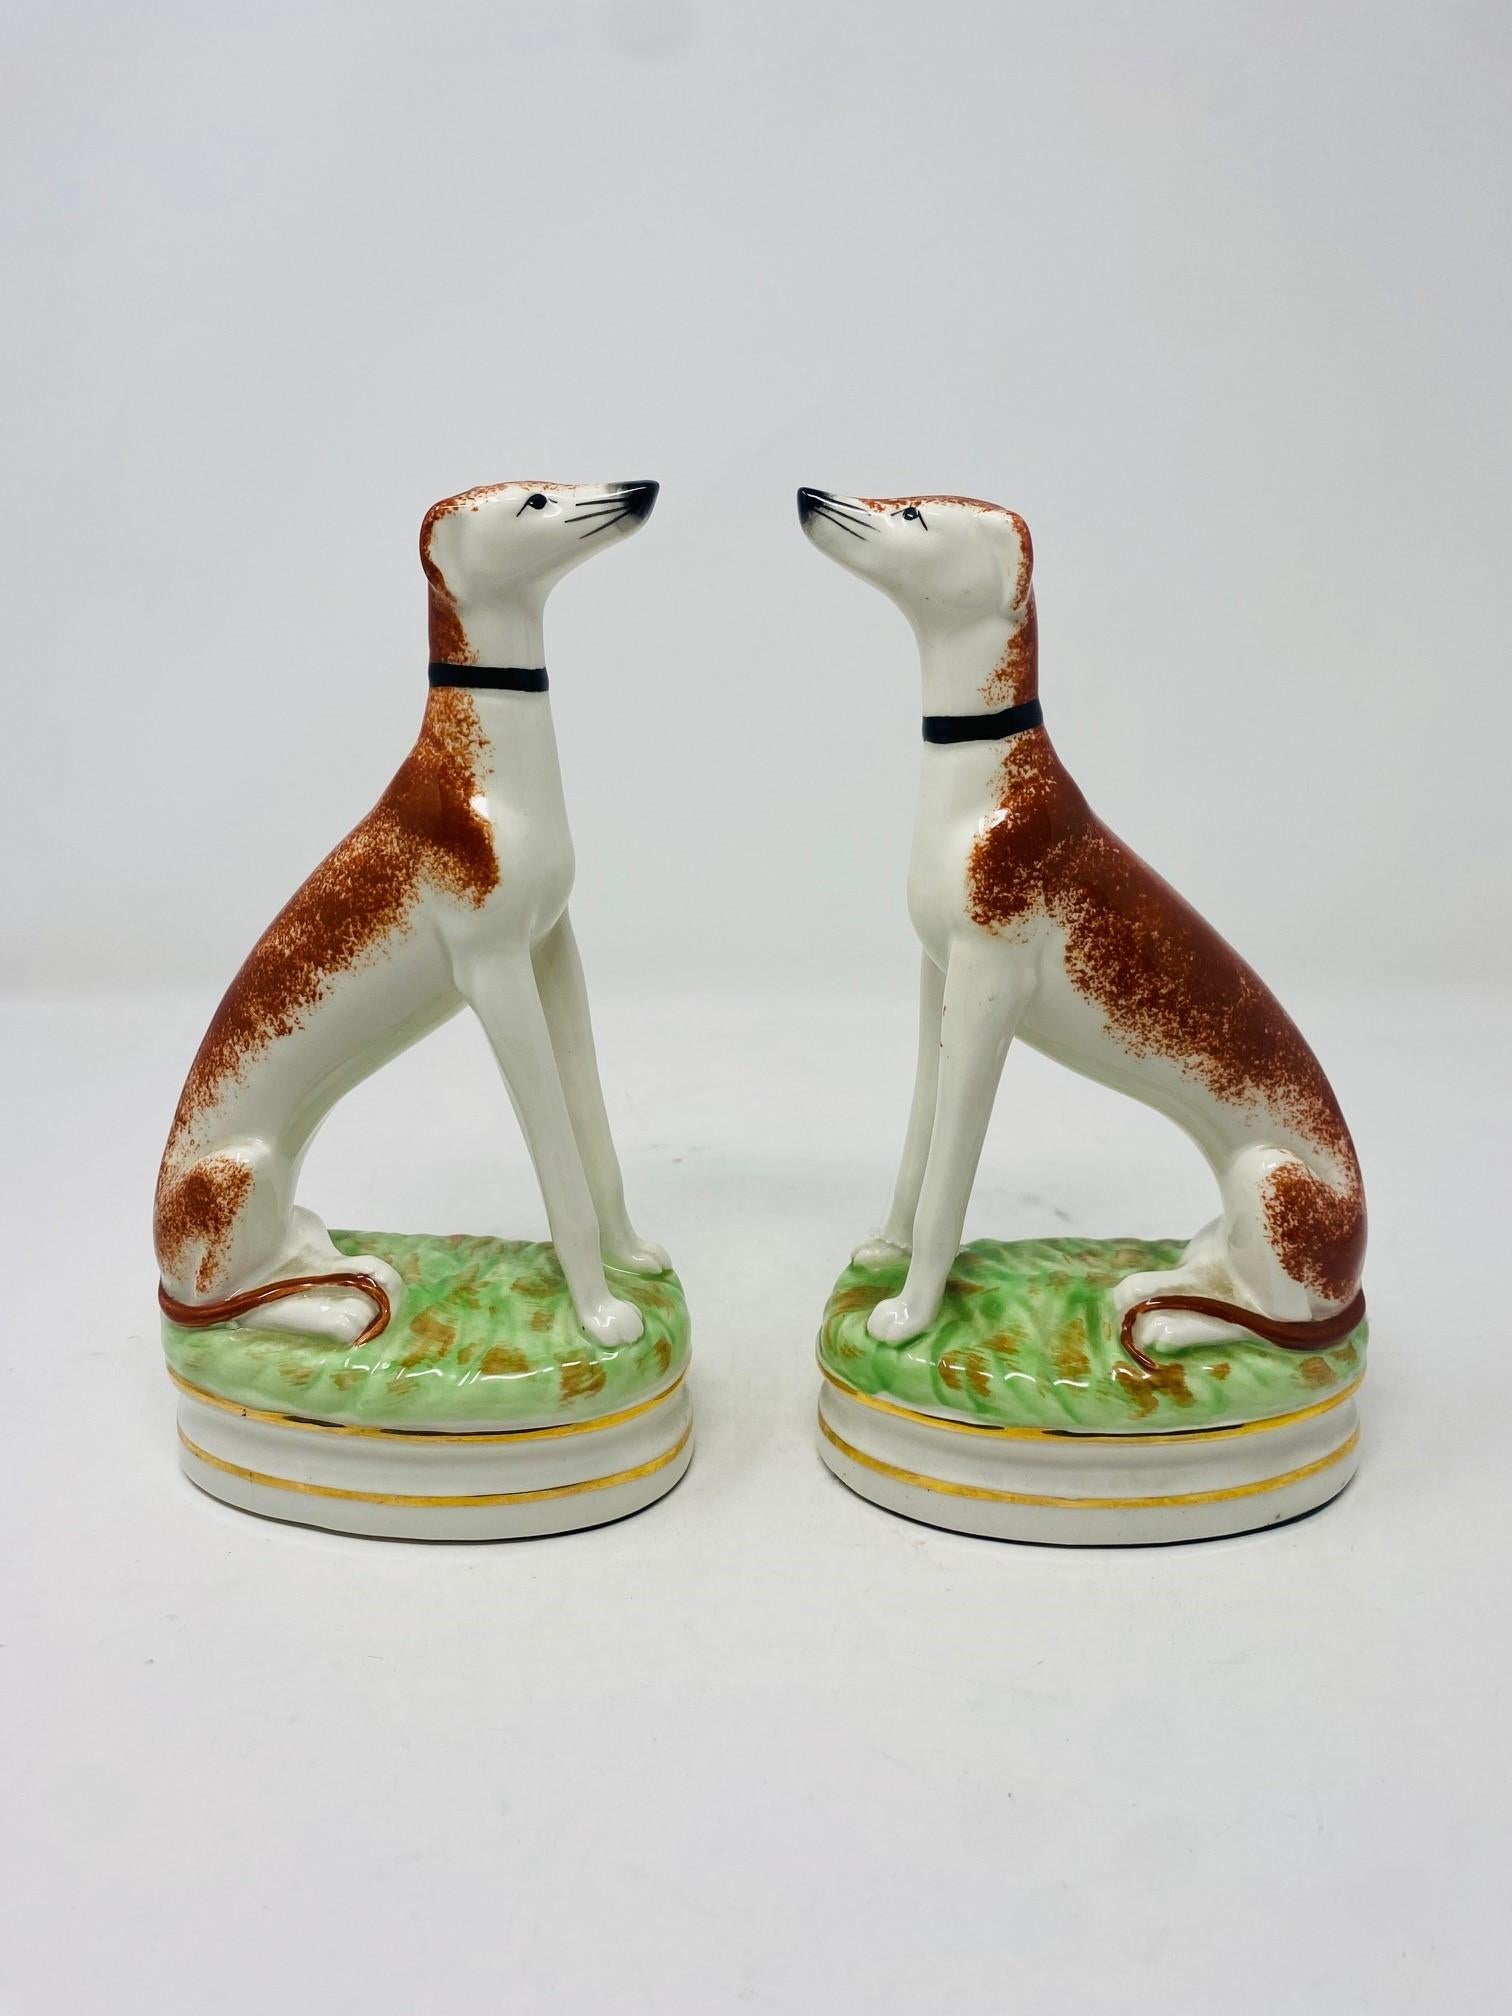 Fabuleuse paire de figurines de chiens de chasse en porcelaine Staffordshire assis sur des coussins d'herbe avec garniture dorée. Sous le pad de protection en feutre se trouve un trou que l'entreprise a fait exprès de percer pour pouvoir y placer